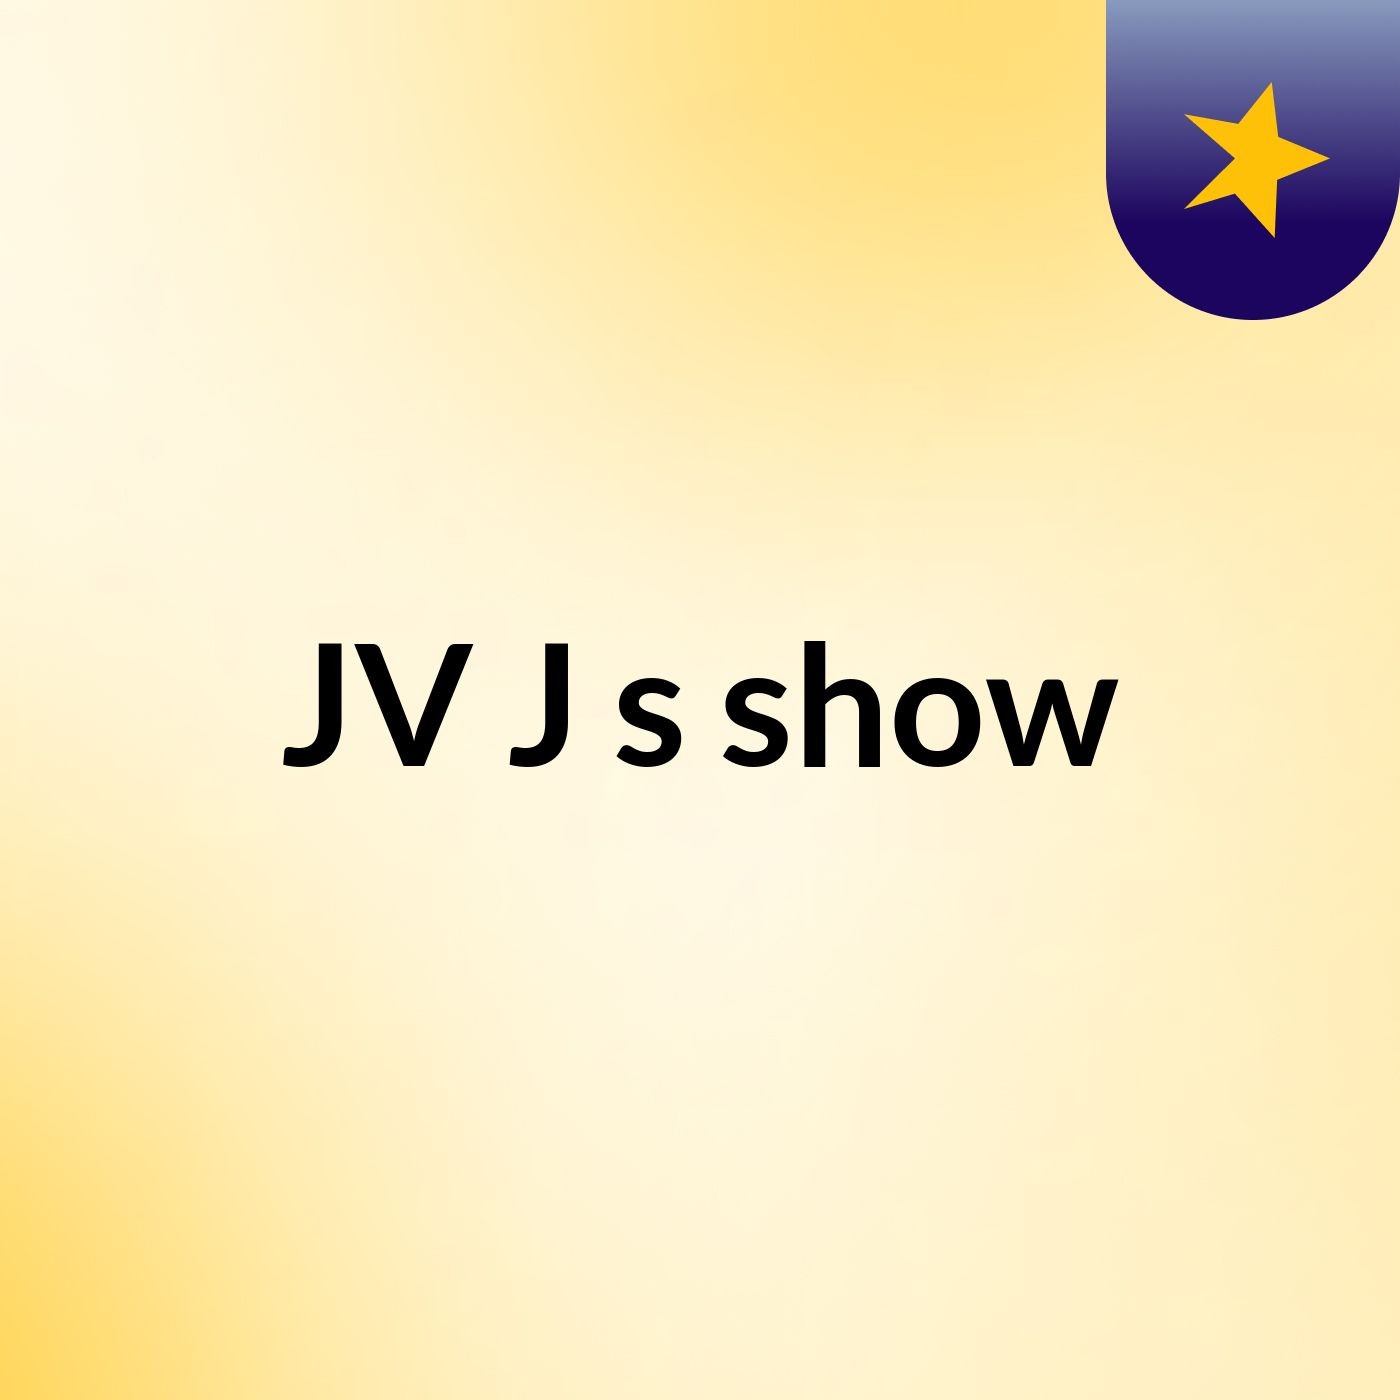 JV J's show